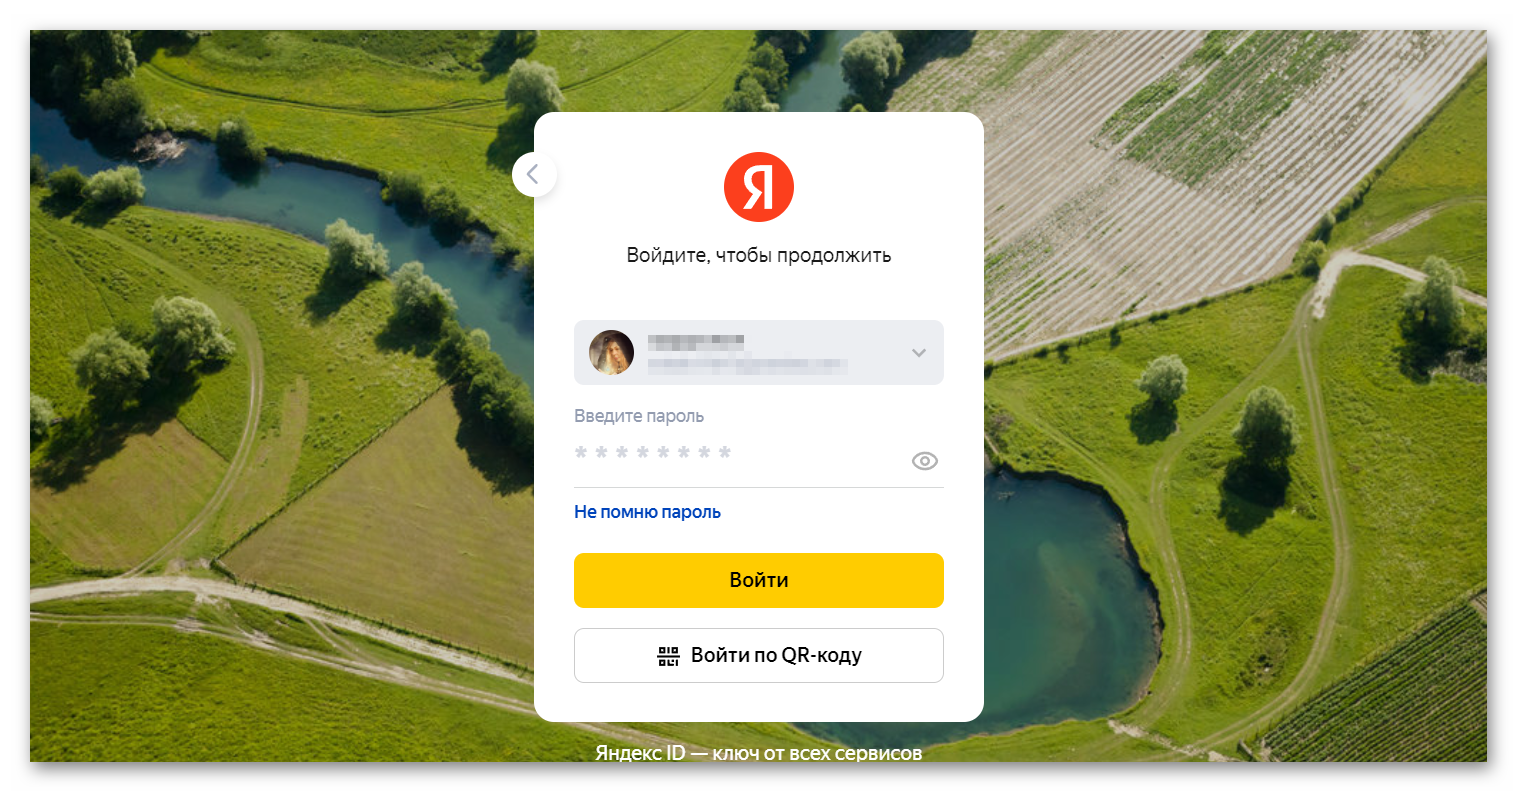 Авторизация в Яндекс аккаунте при сбросе мастер-пароля